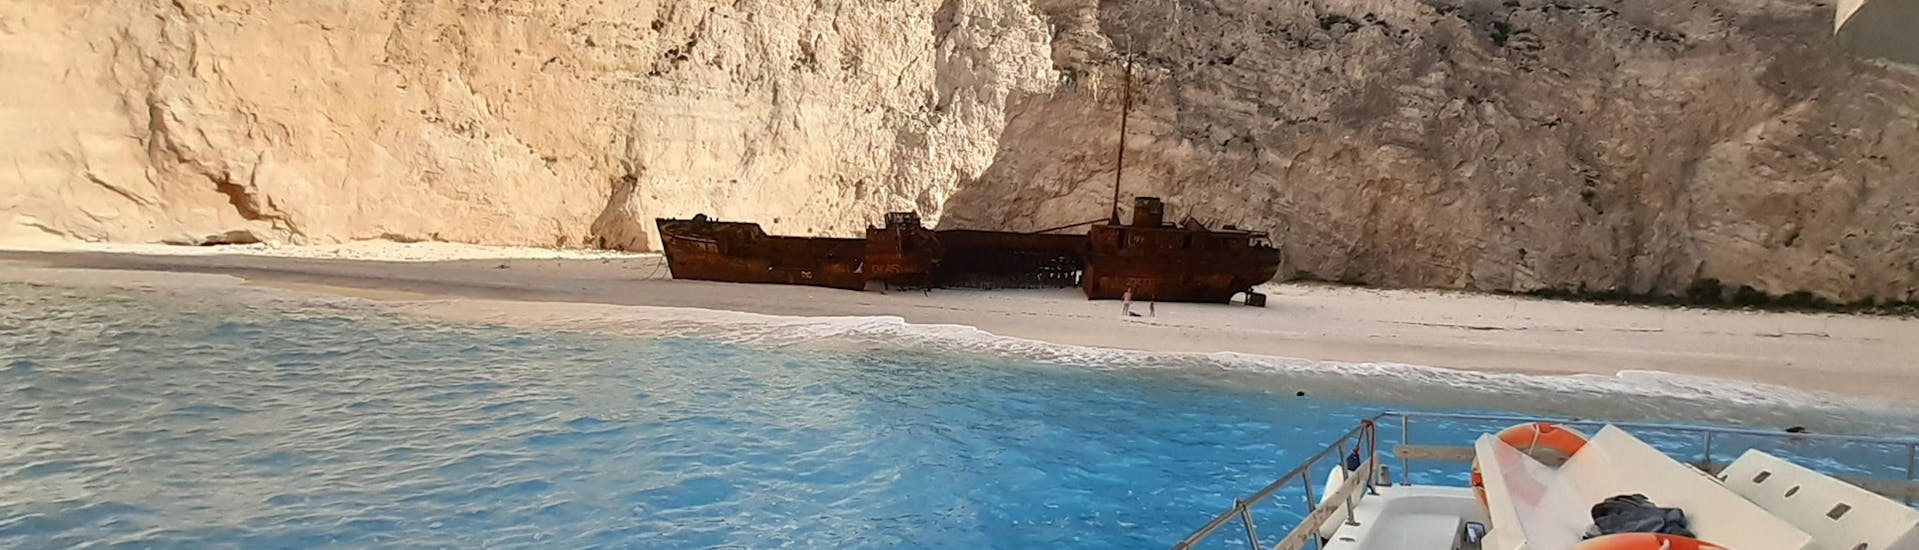 L'épave posée sur la plage à voir pendant la Balade privée en bateau d'Agios Nikolaos autour de Zakynthos avec Theodosis Cruises Zakynthos.